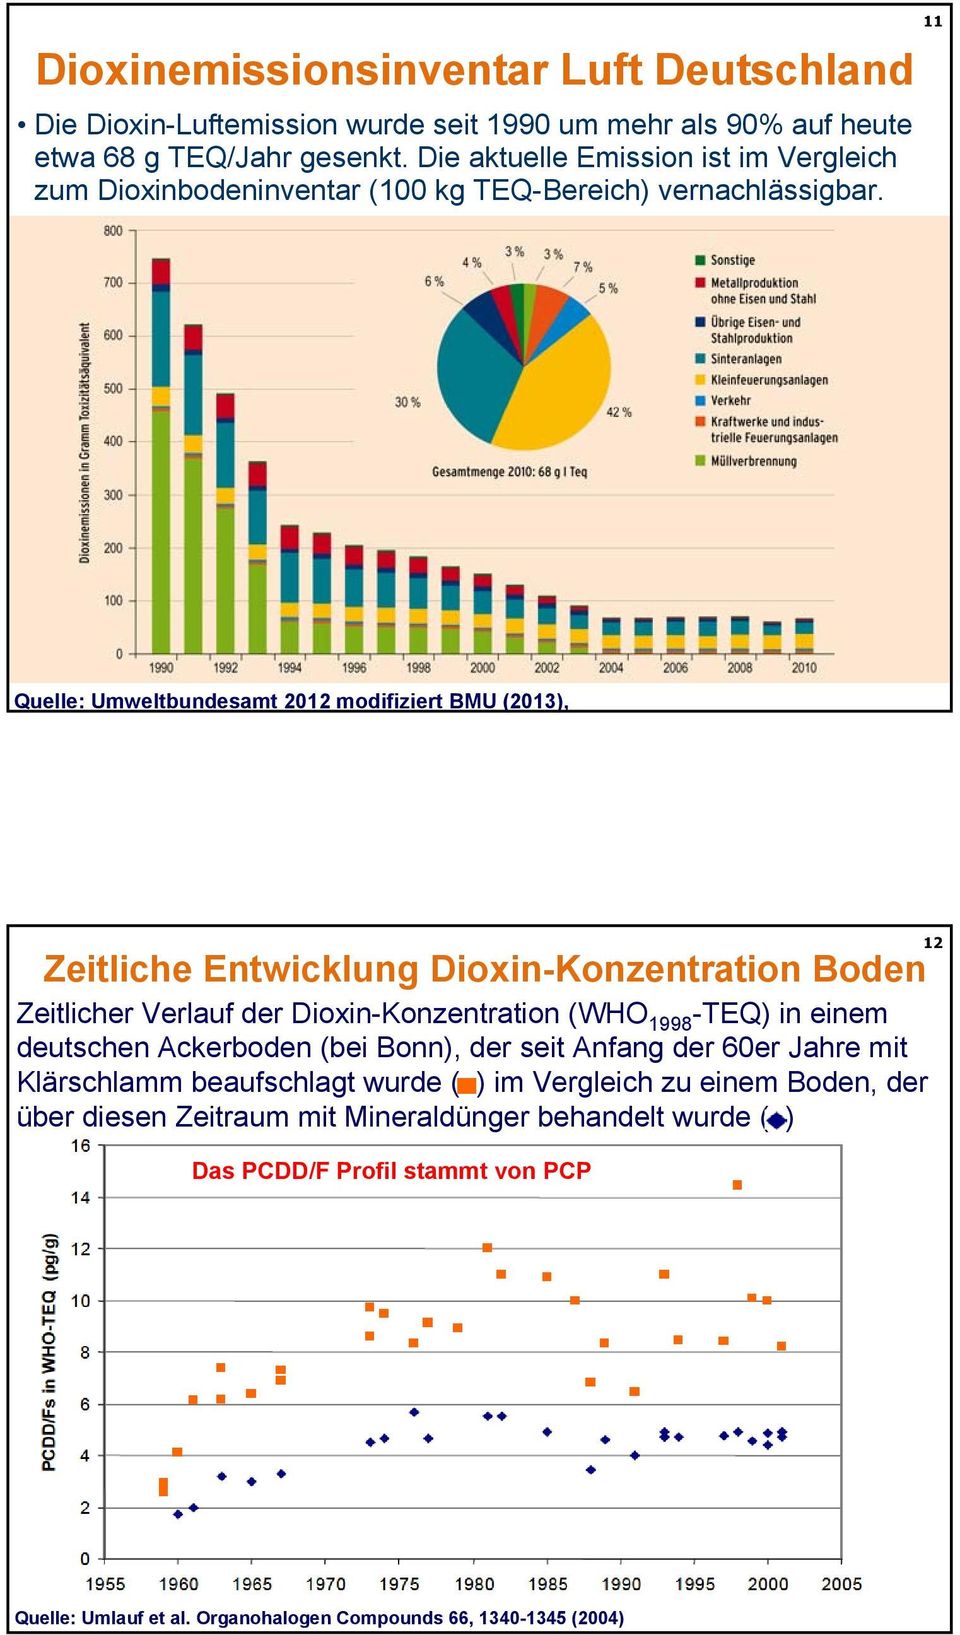 11 Quelle: Umweltbundesamt 2012 modifiziert BMU (2013), Zeitliche Entwicklung Dioxin-Konzentration Boden Zeitlicher Verlauf der Dioxin-Konzentration (WHO 1998 -TEQ) in einem